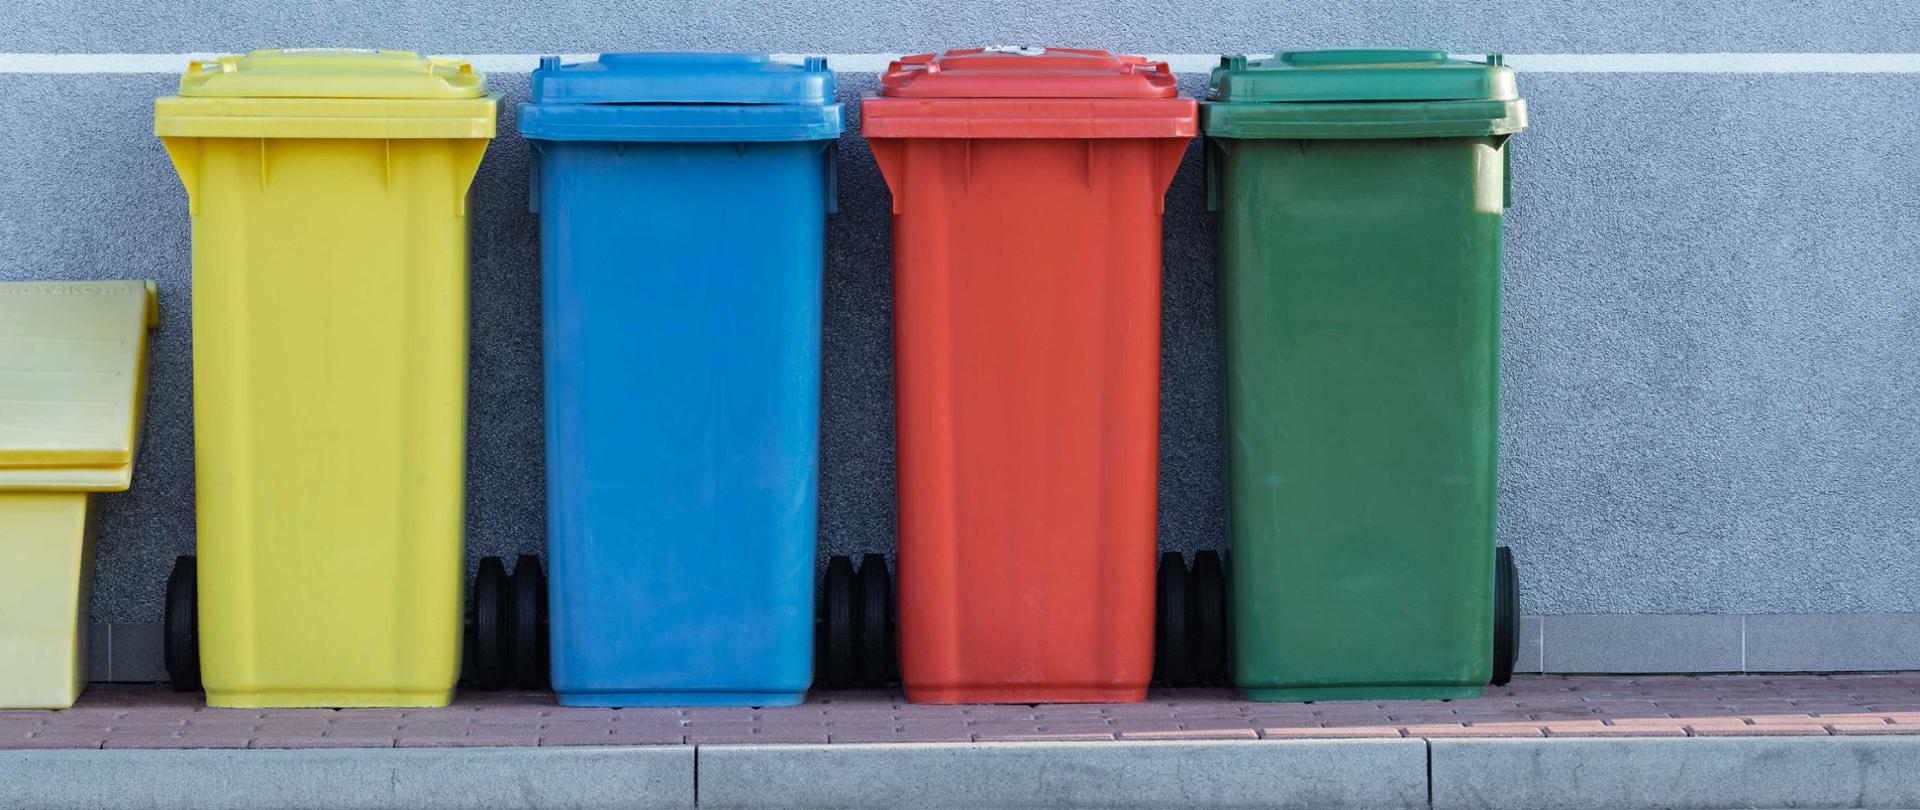 Na zdjęciu widoczne są 4 kosze na śmieci. Od lewej żółty, niebieski, czerwony i zielony. 